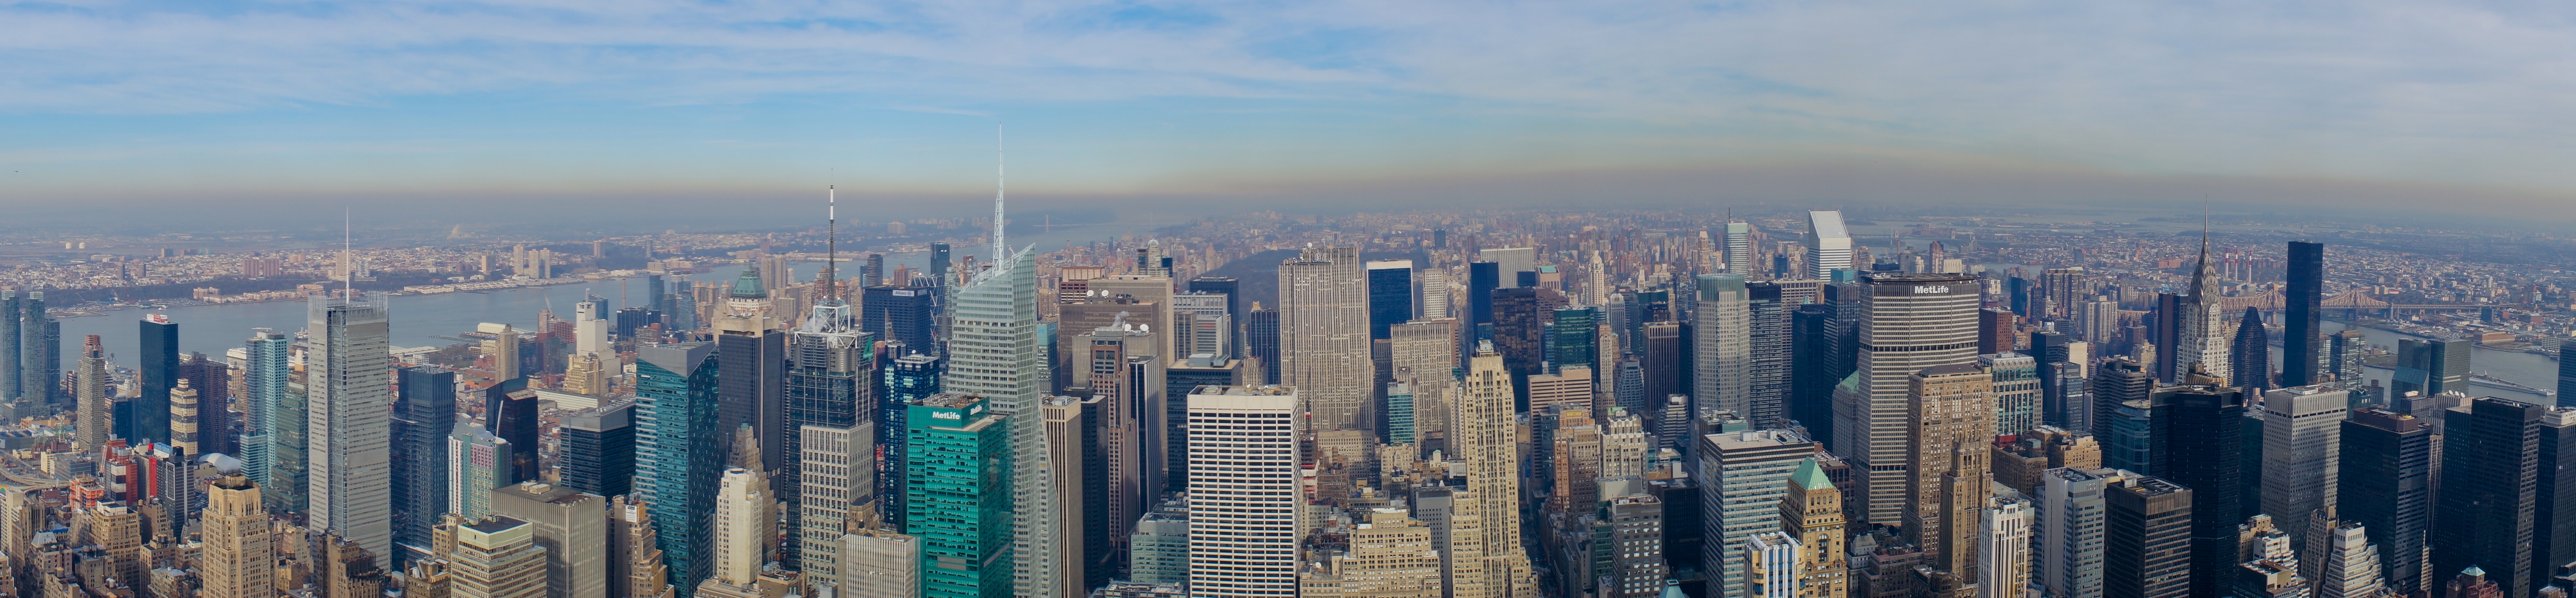 File:New york city skyline panorama.jpg - Wikimedia Commons